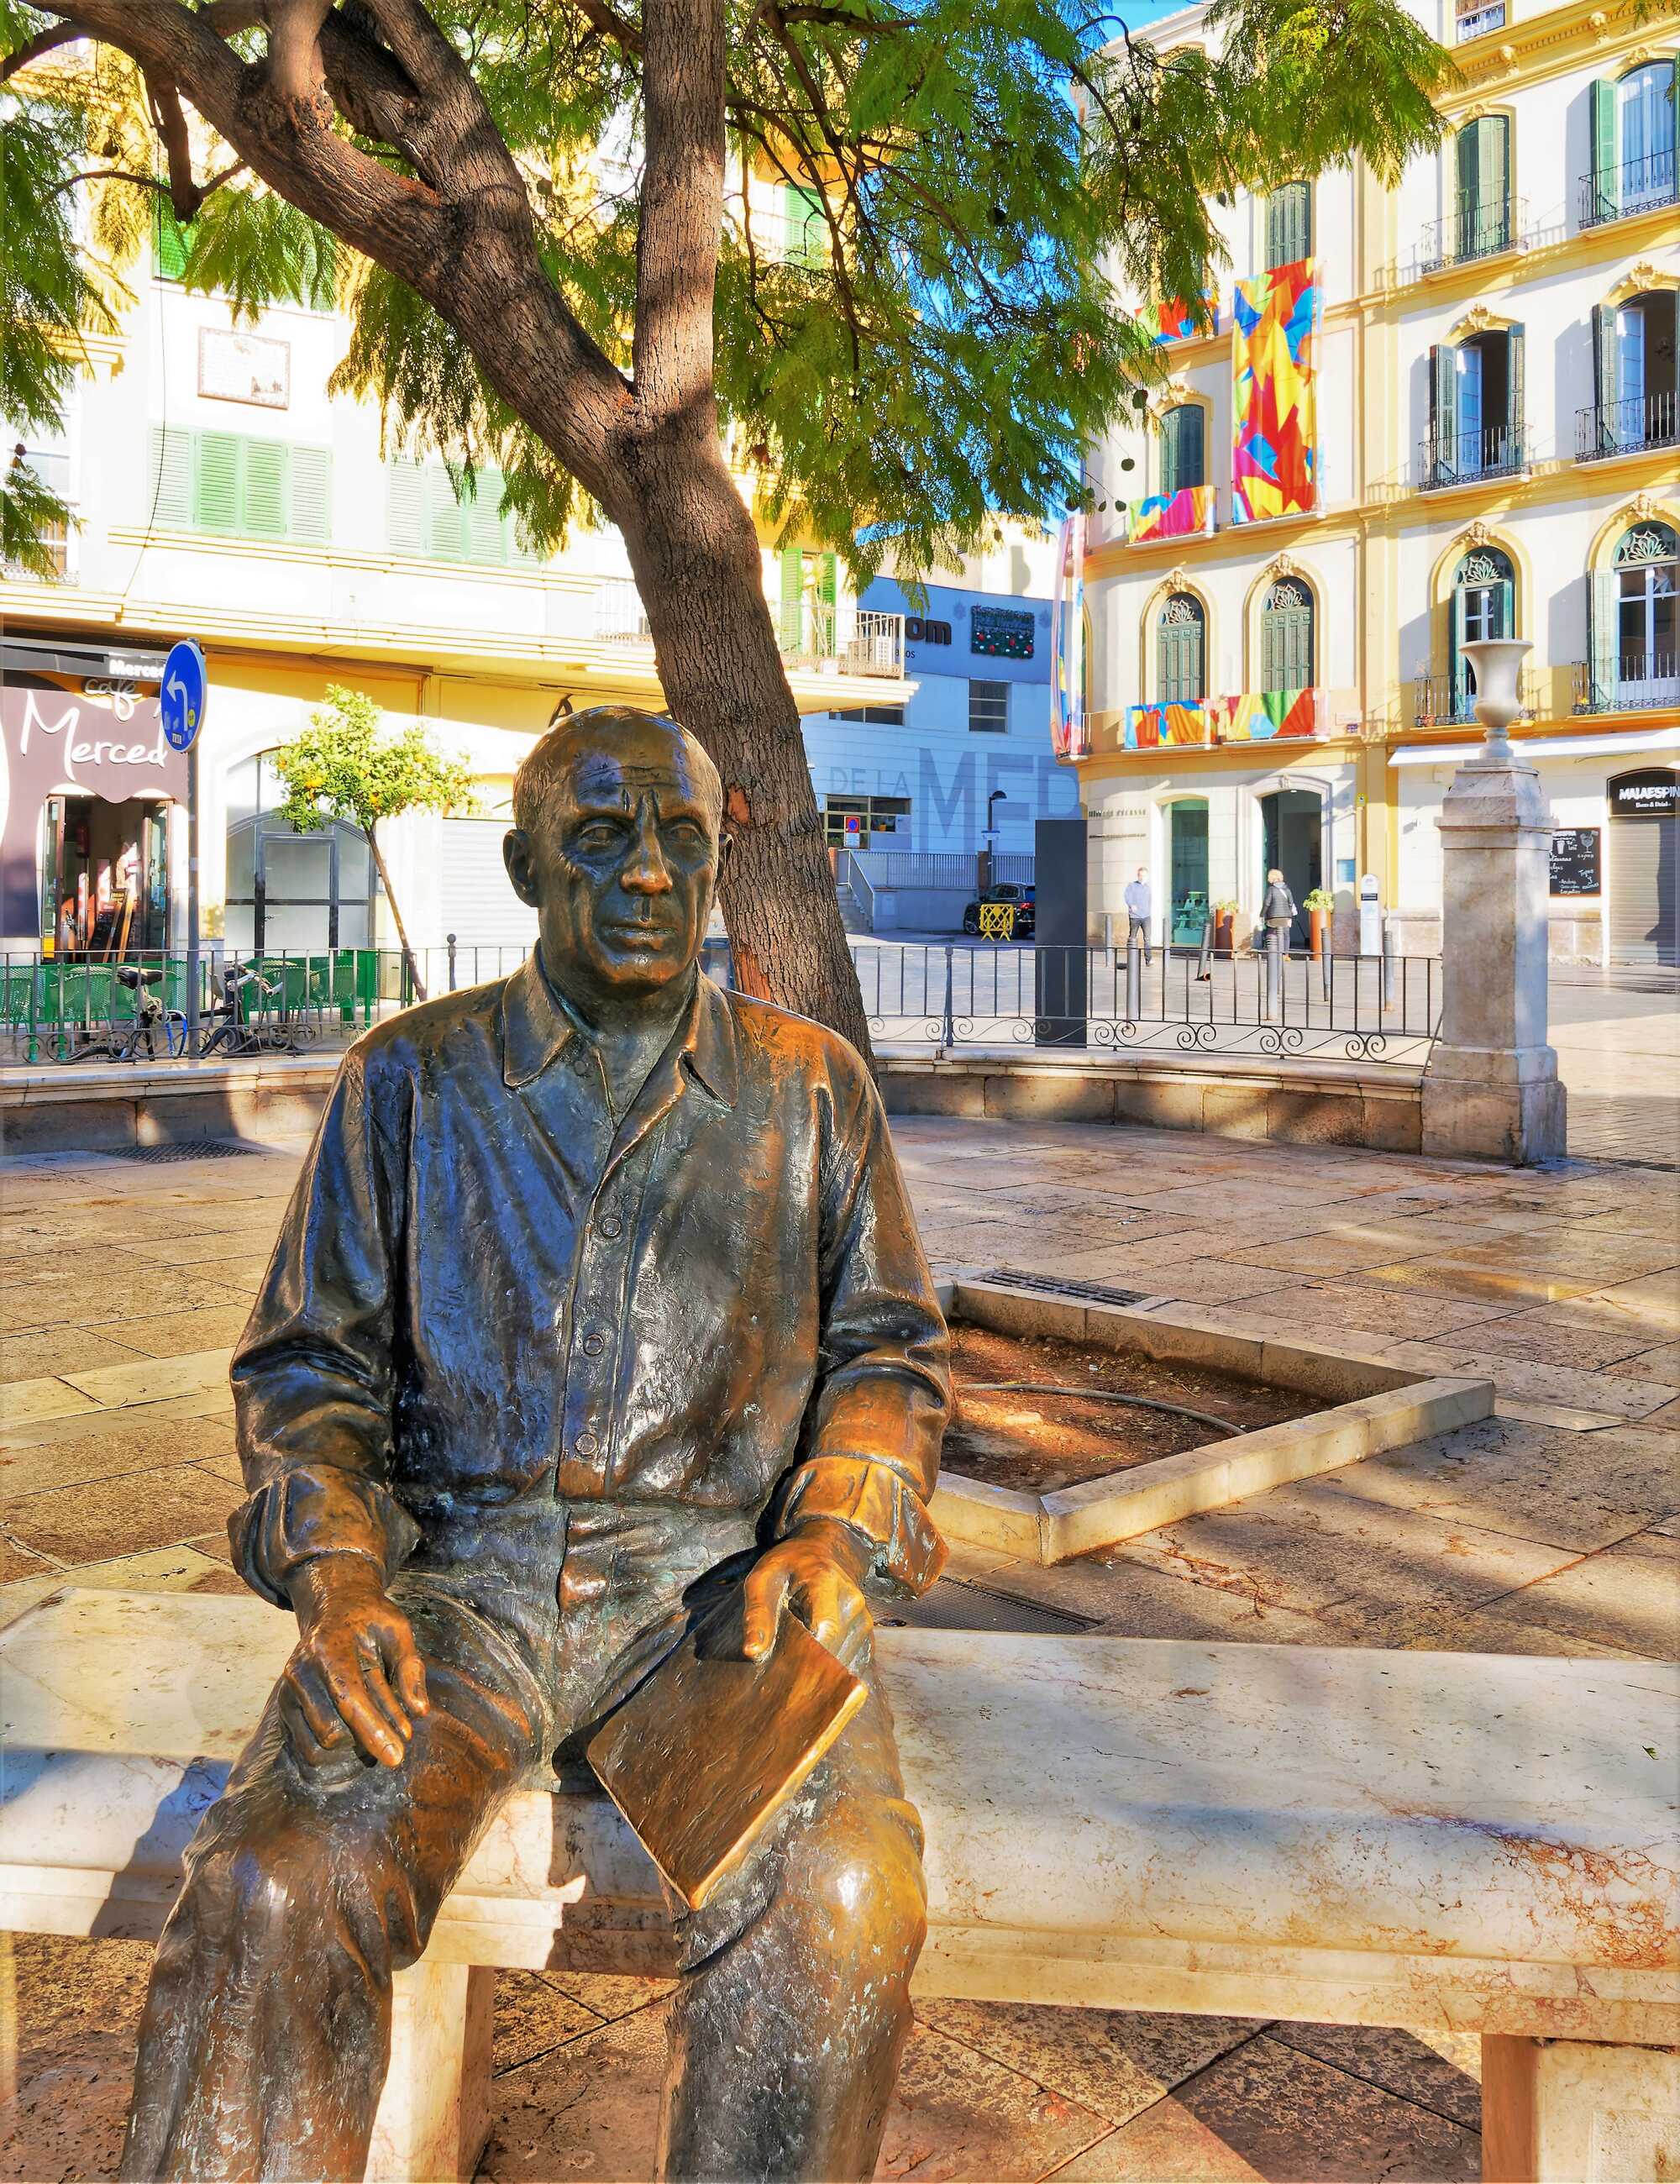 Statue of Pedro Espinosa outside the church, Antequera, Malaga